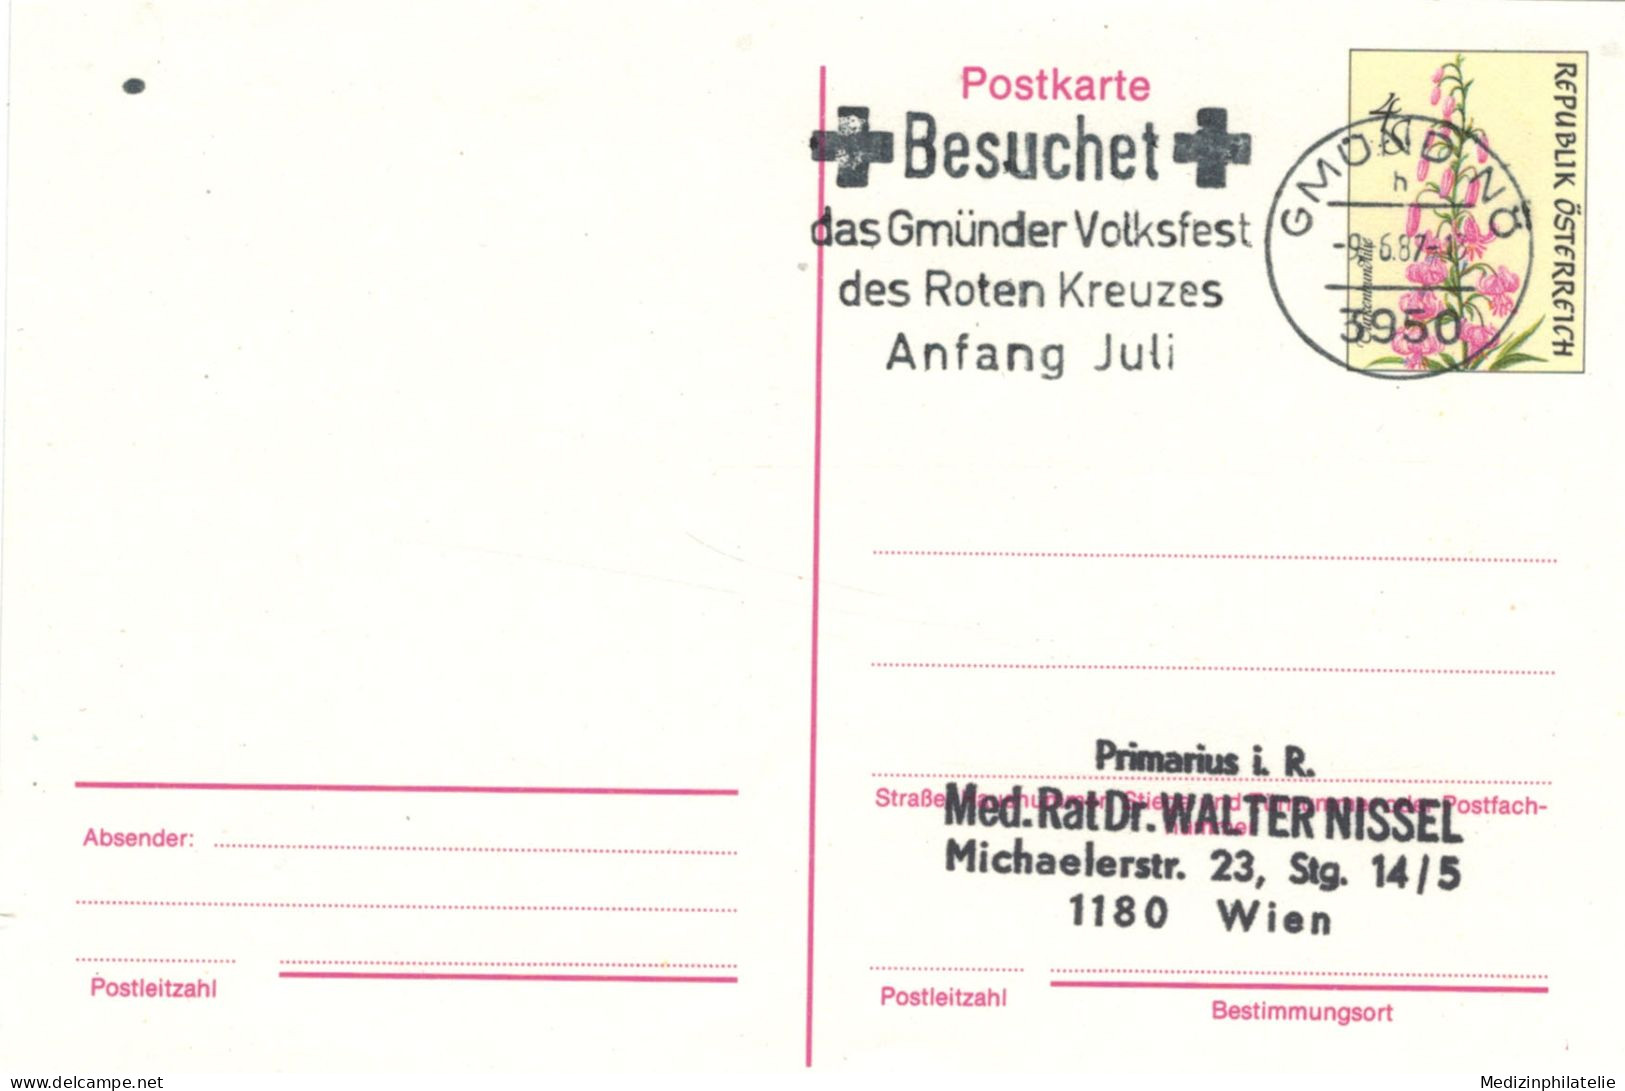 Rotes Kreuz - Gmünder Volksfest 3950 1987 - Türkenbund-Lilie - First Aid